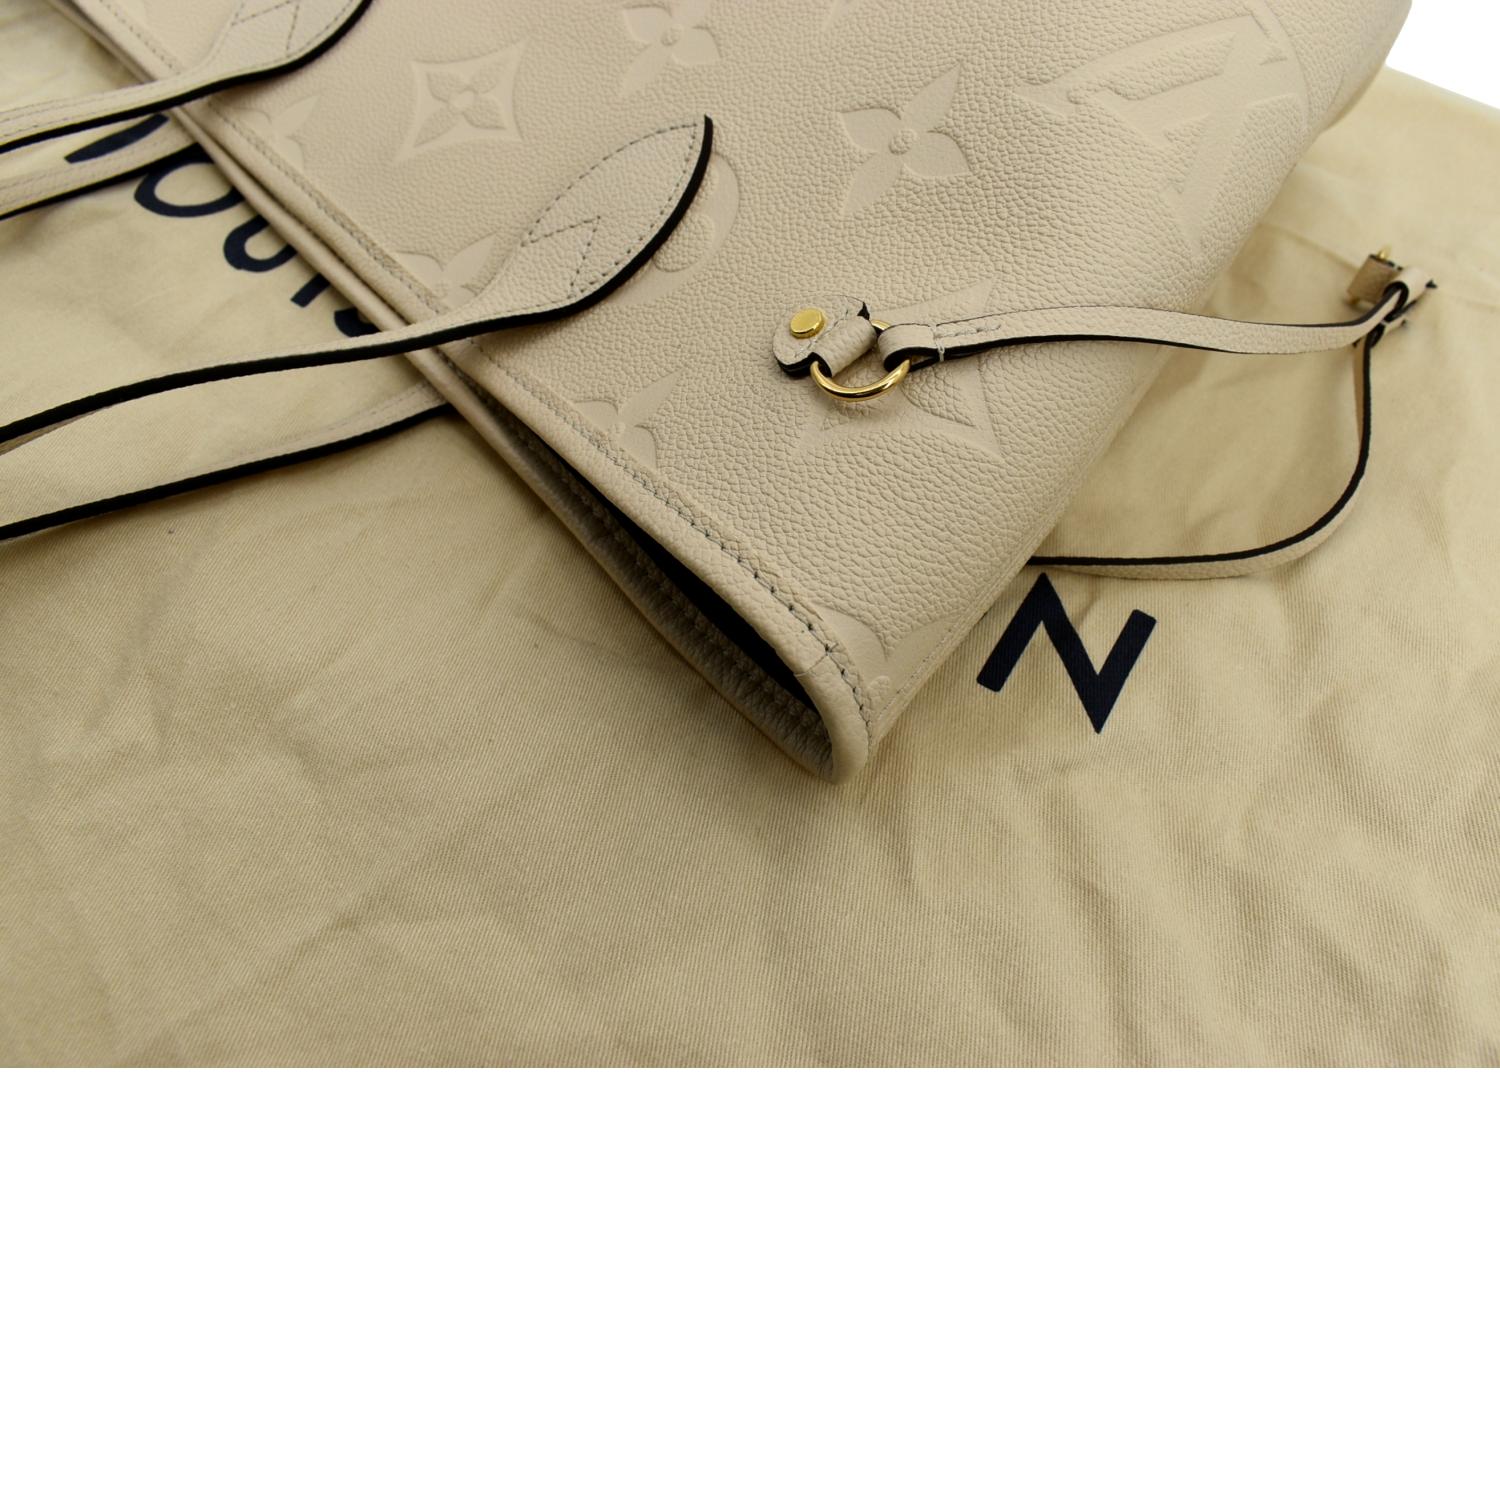 Louis Vuitton Neverfull MM Monogram Empriente Cream/Black in